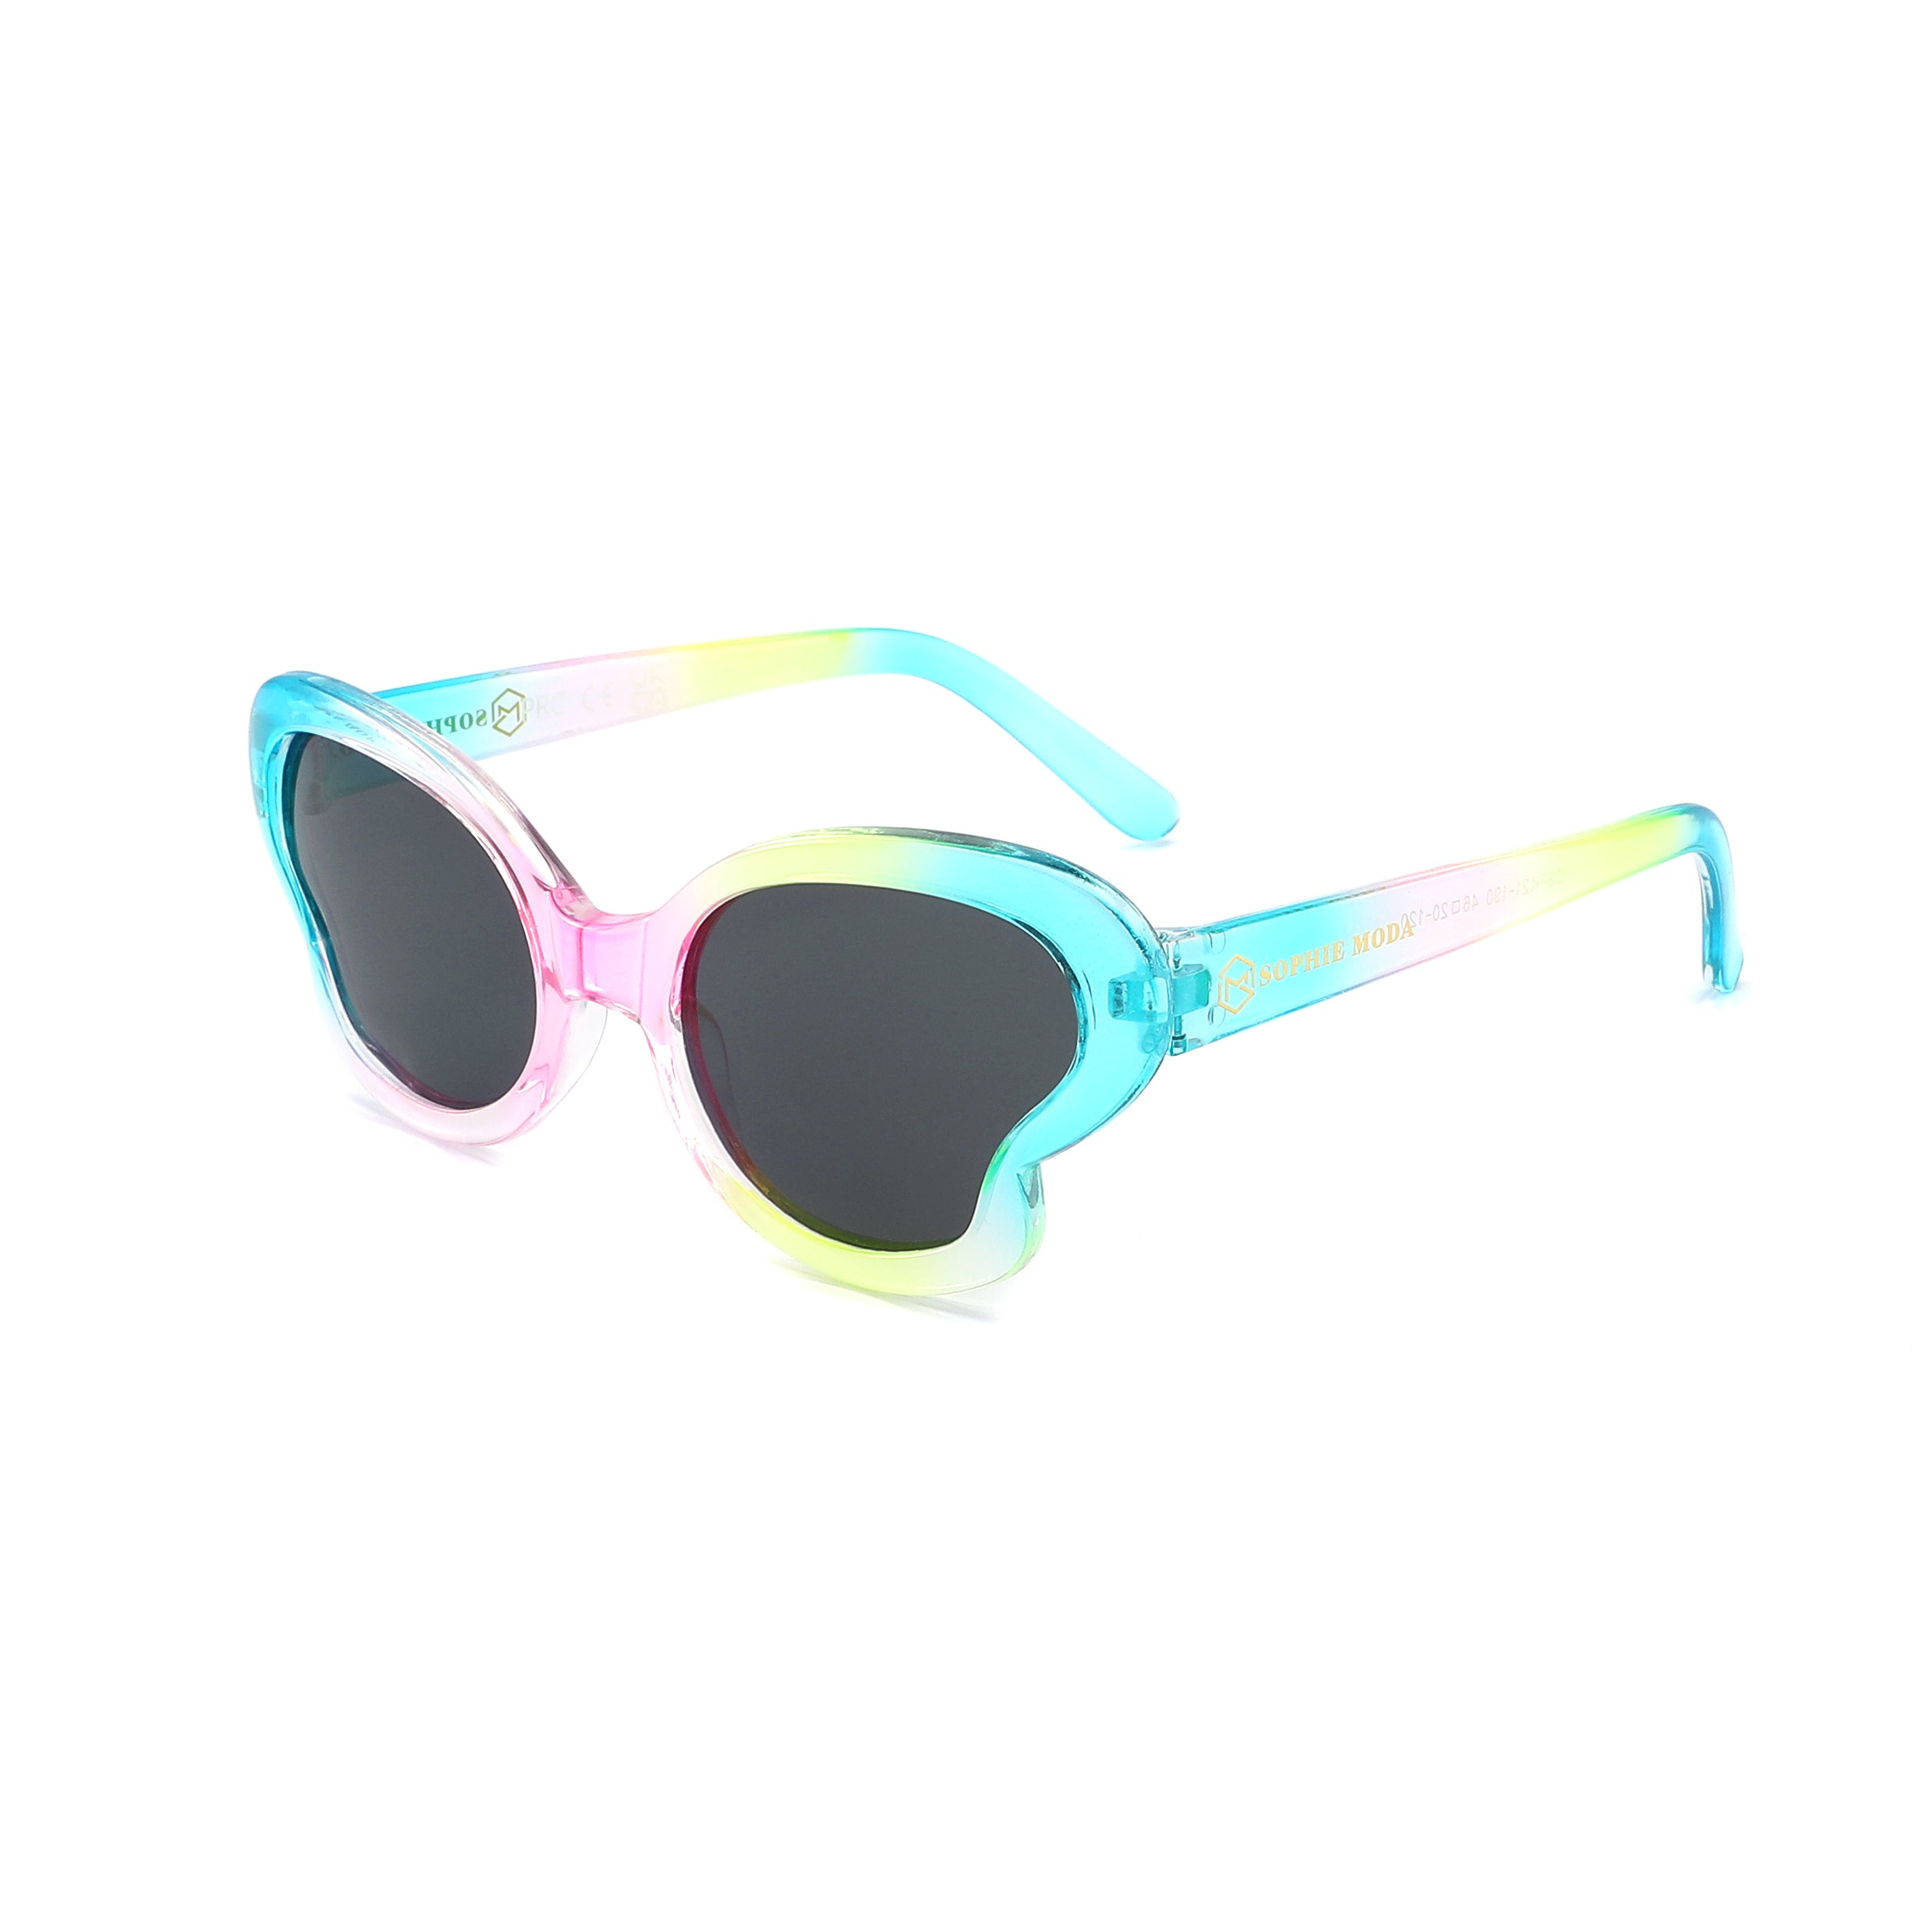 Sunglasses Kids: Petit Papillon Polarised